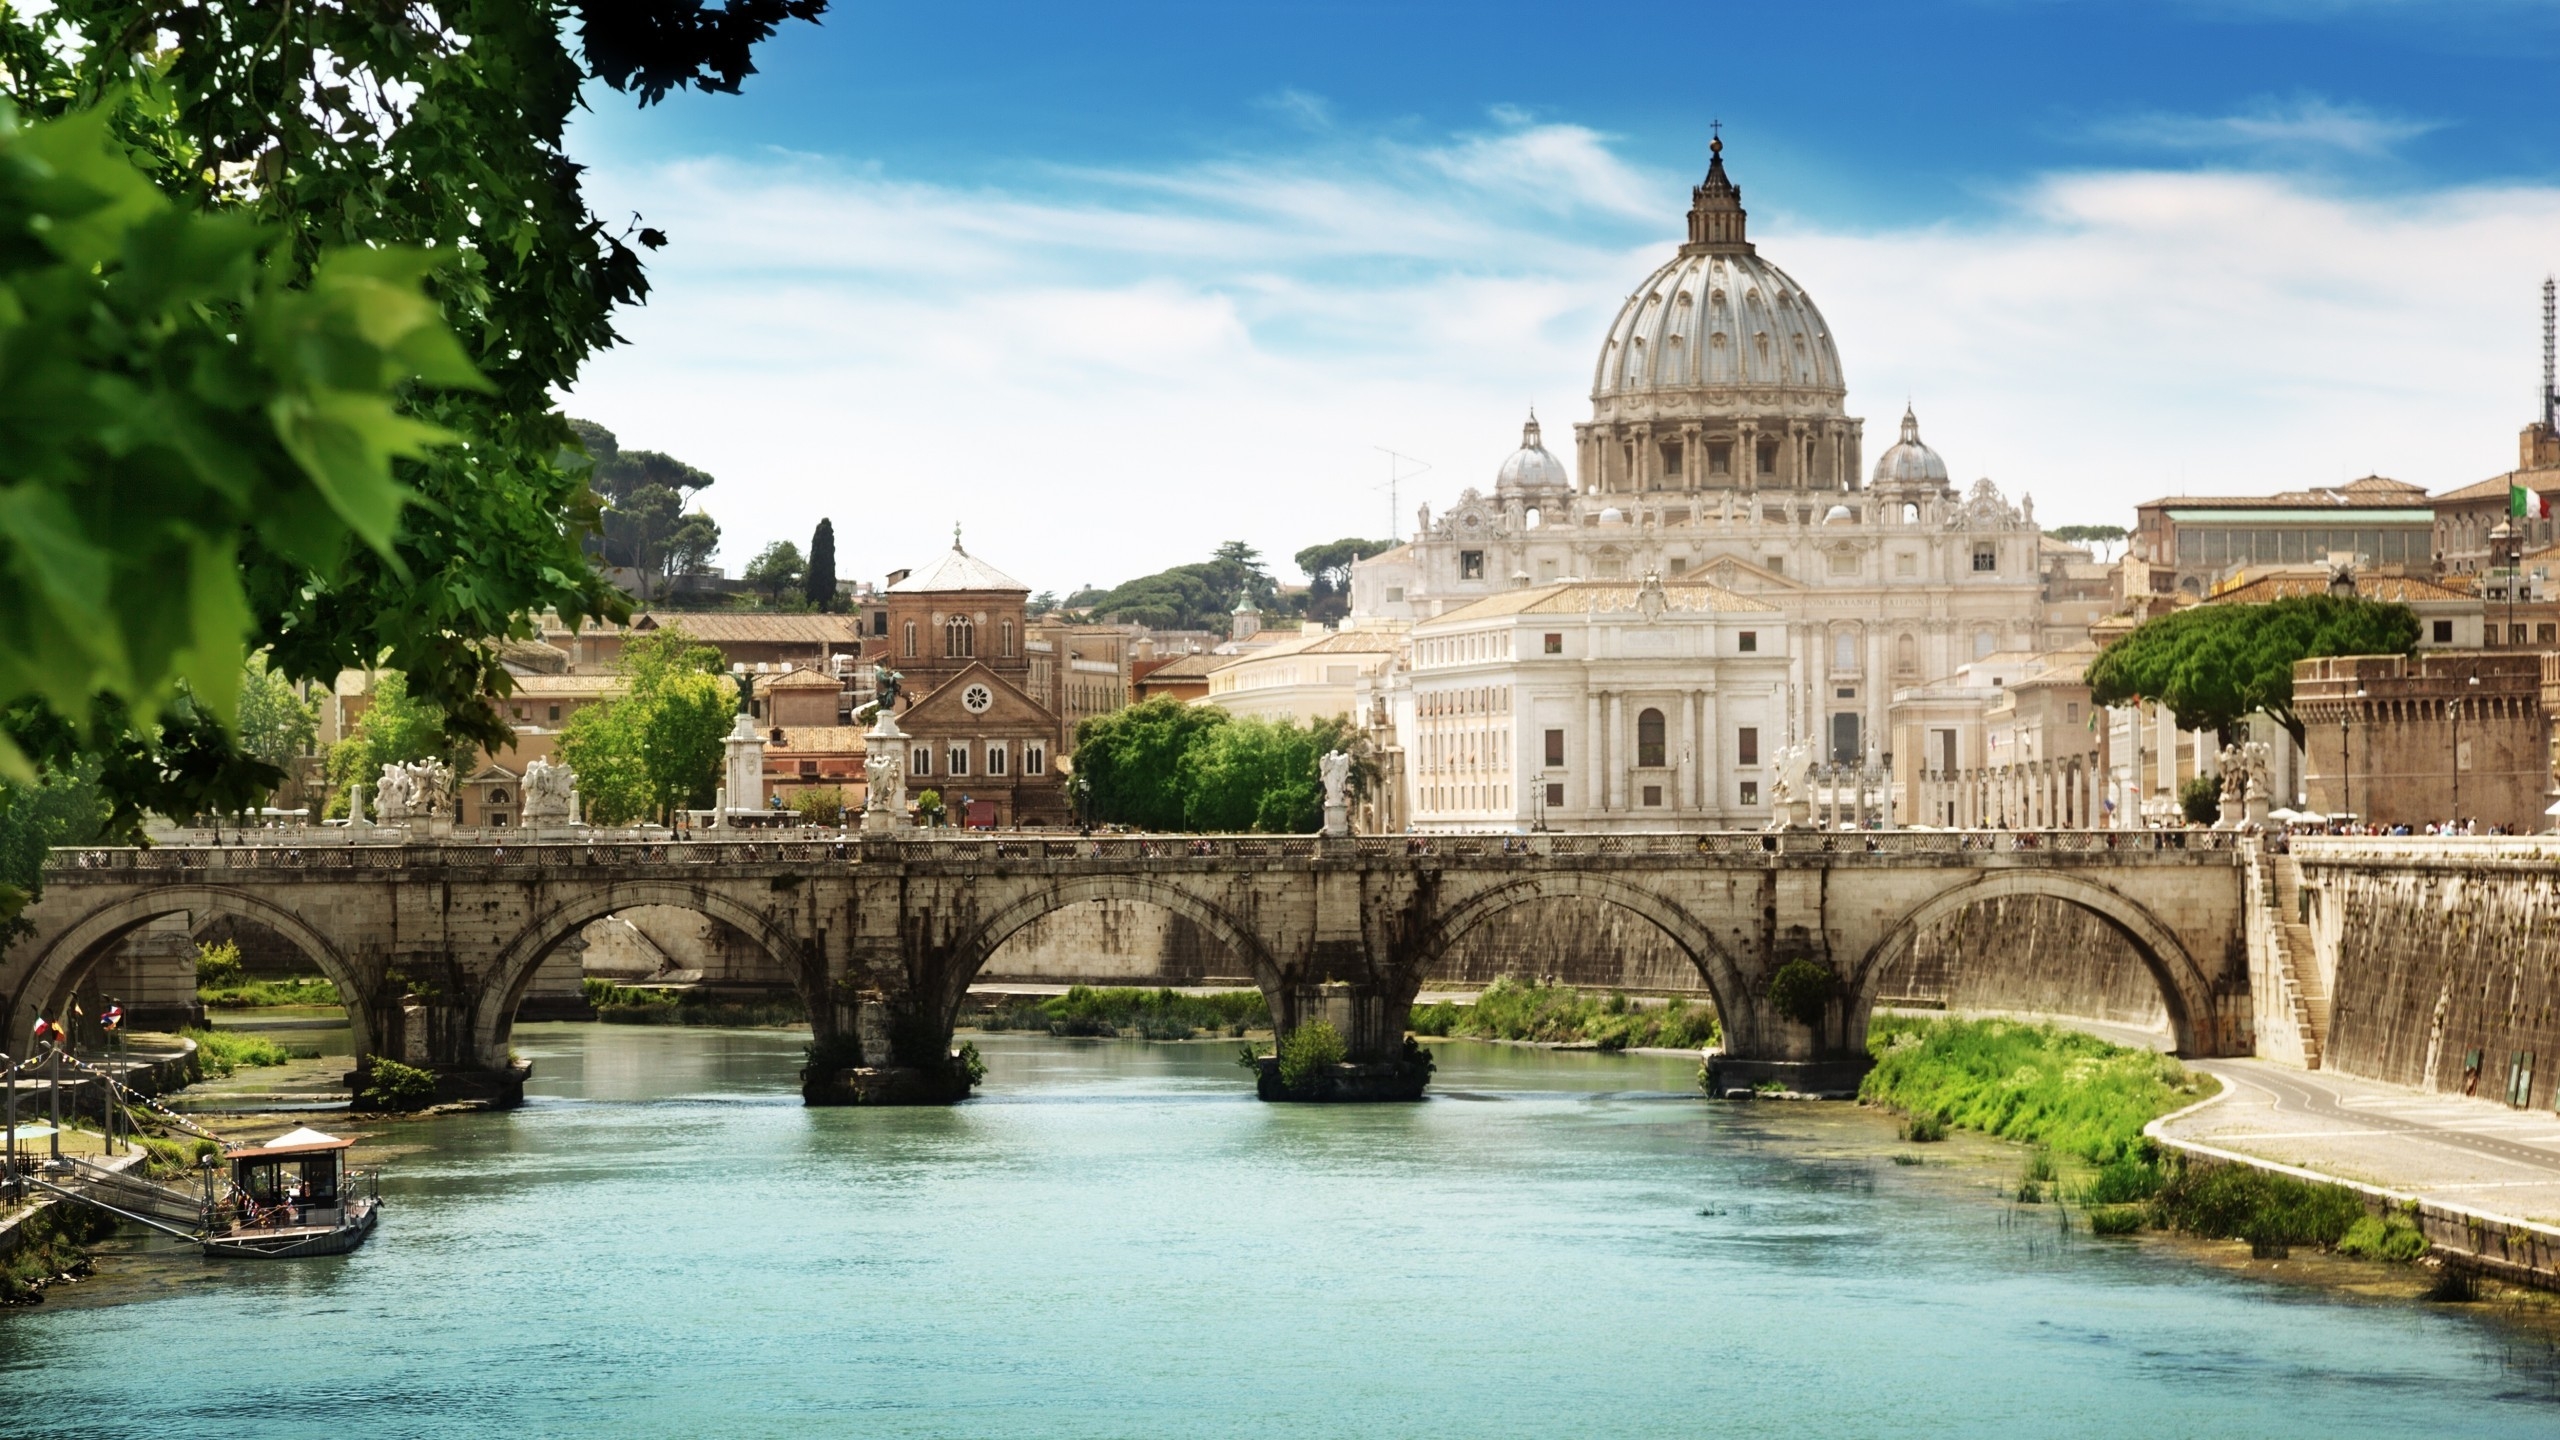 St Angelo Bridge Rome for 2560x1440 HDTV resolution